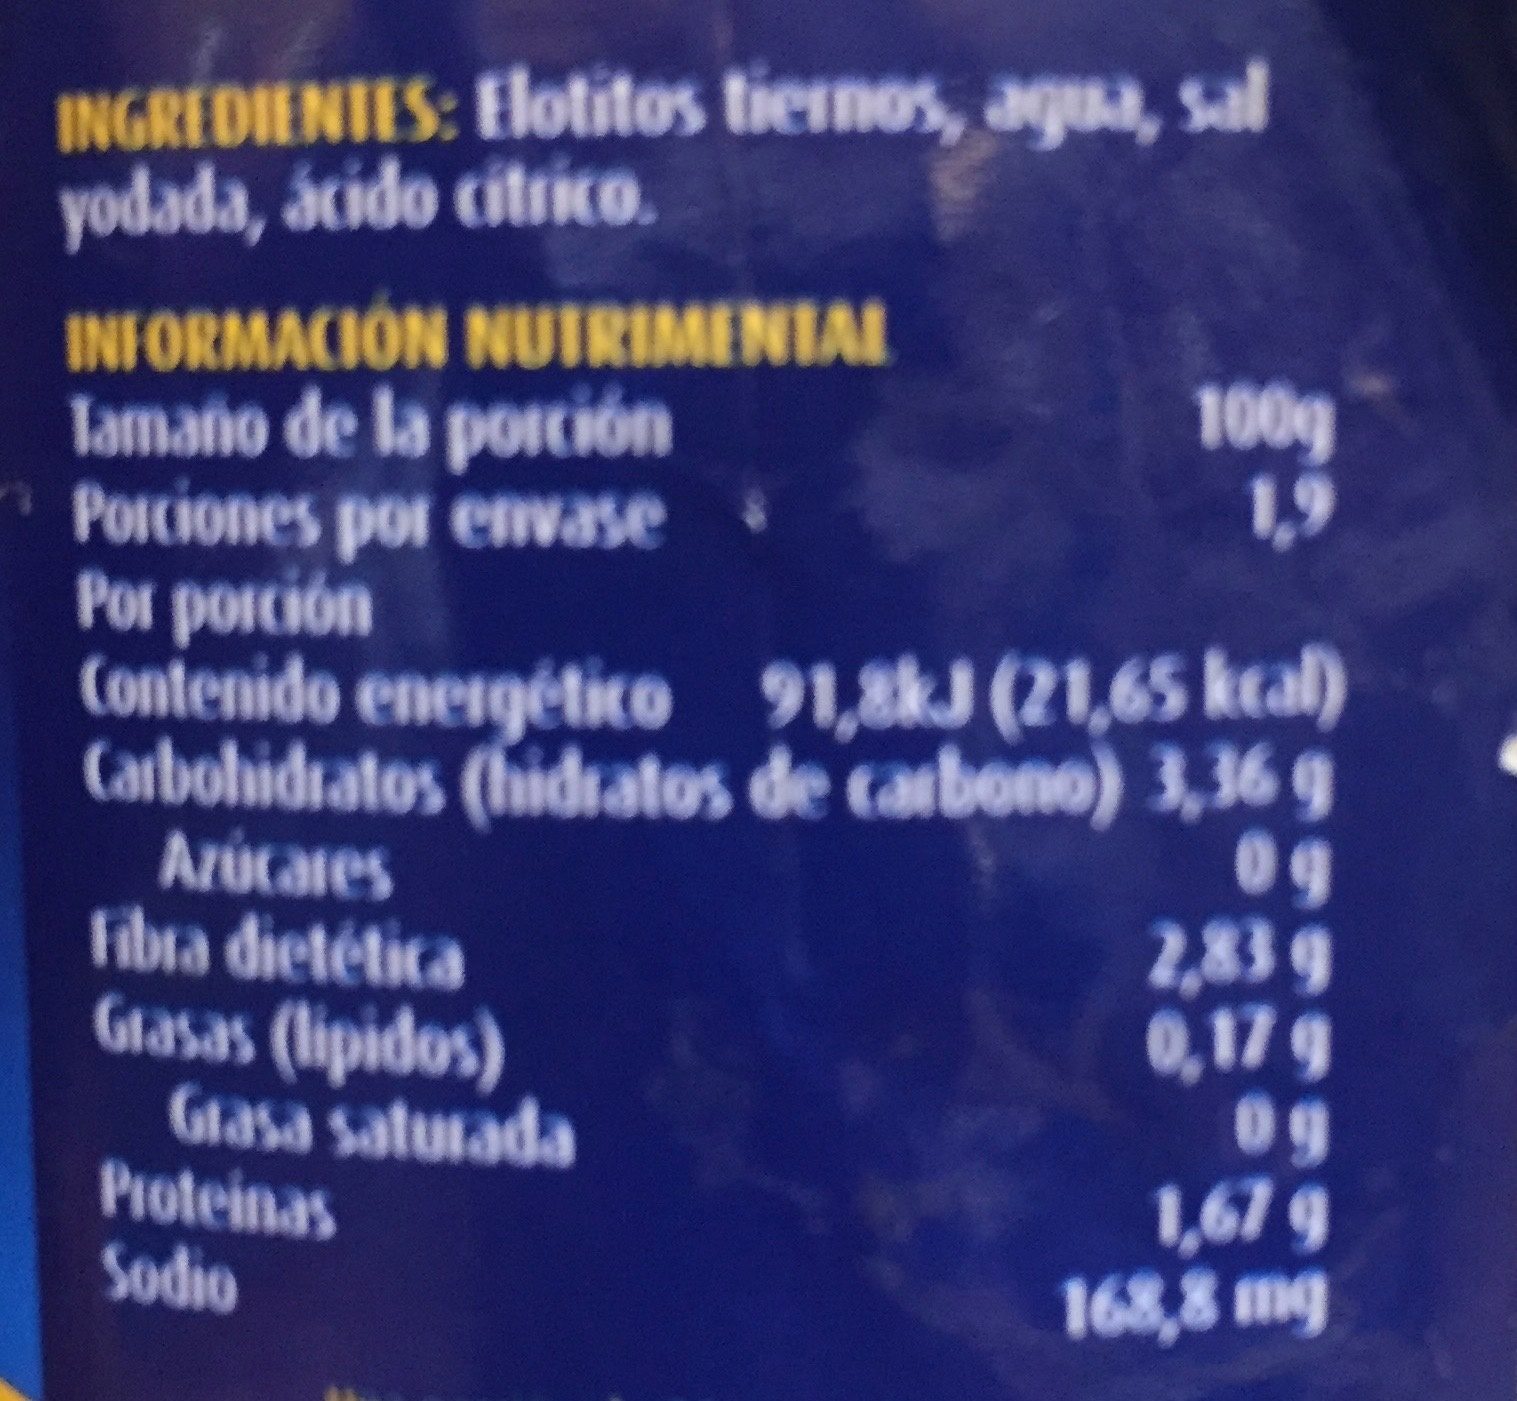 Elotitos tiernos San Lázaro - Información nutricional